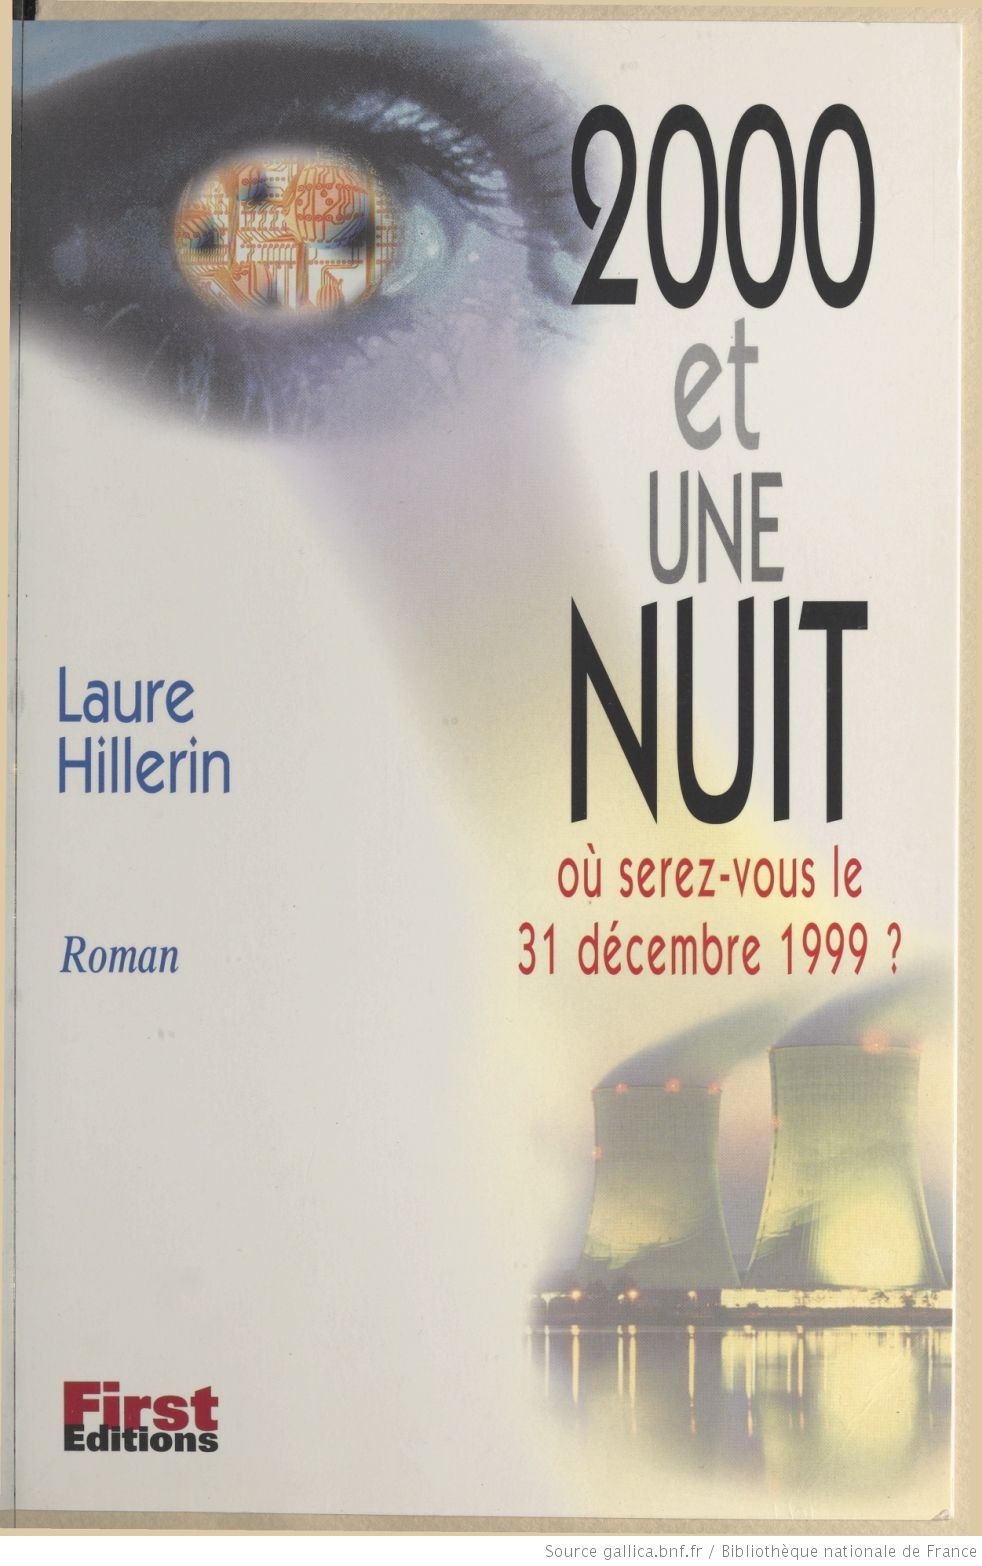 2000 et une nuit Hillerin Laure bpt6k3326240x